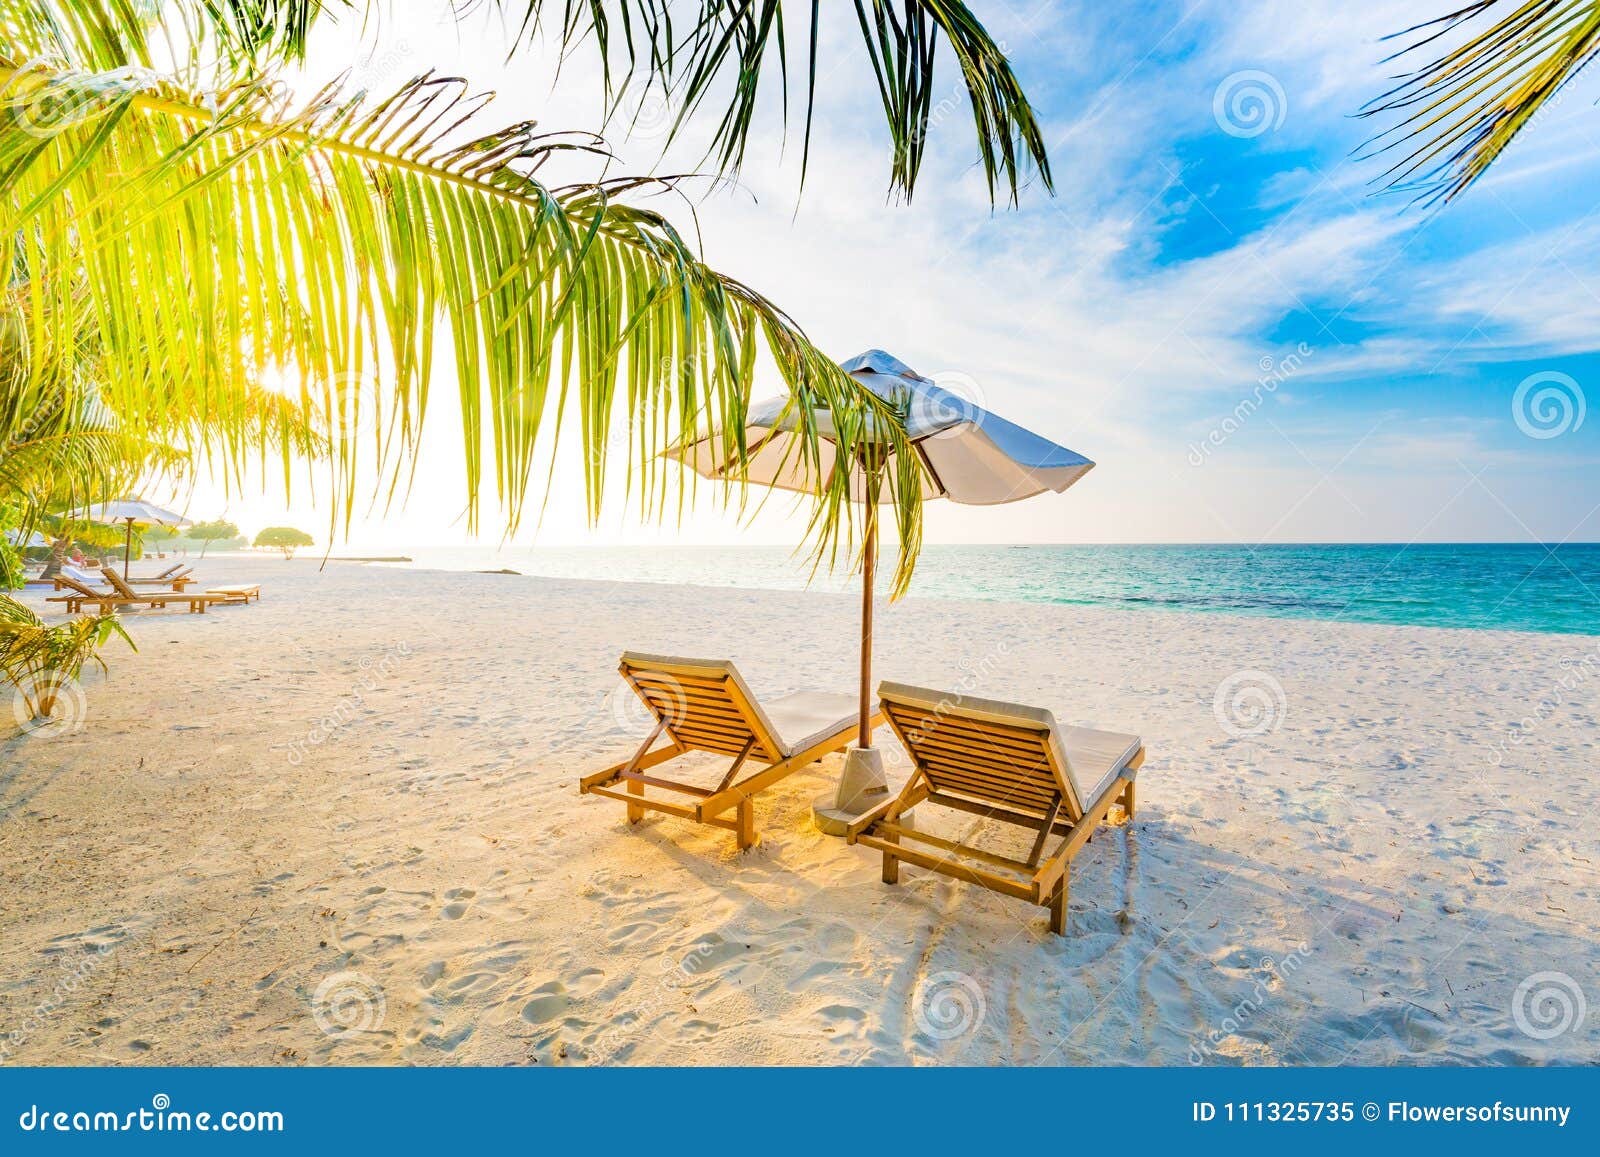 夏天旅行目的地背景夏天海滩场面、太阳床阳伞和棕榈树库存图片. 图片包括有心情, 海岛, 冒险家- 111325735